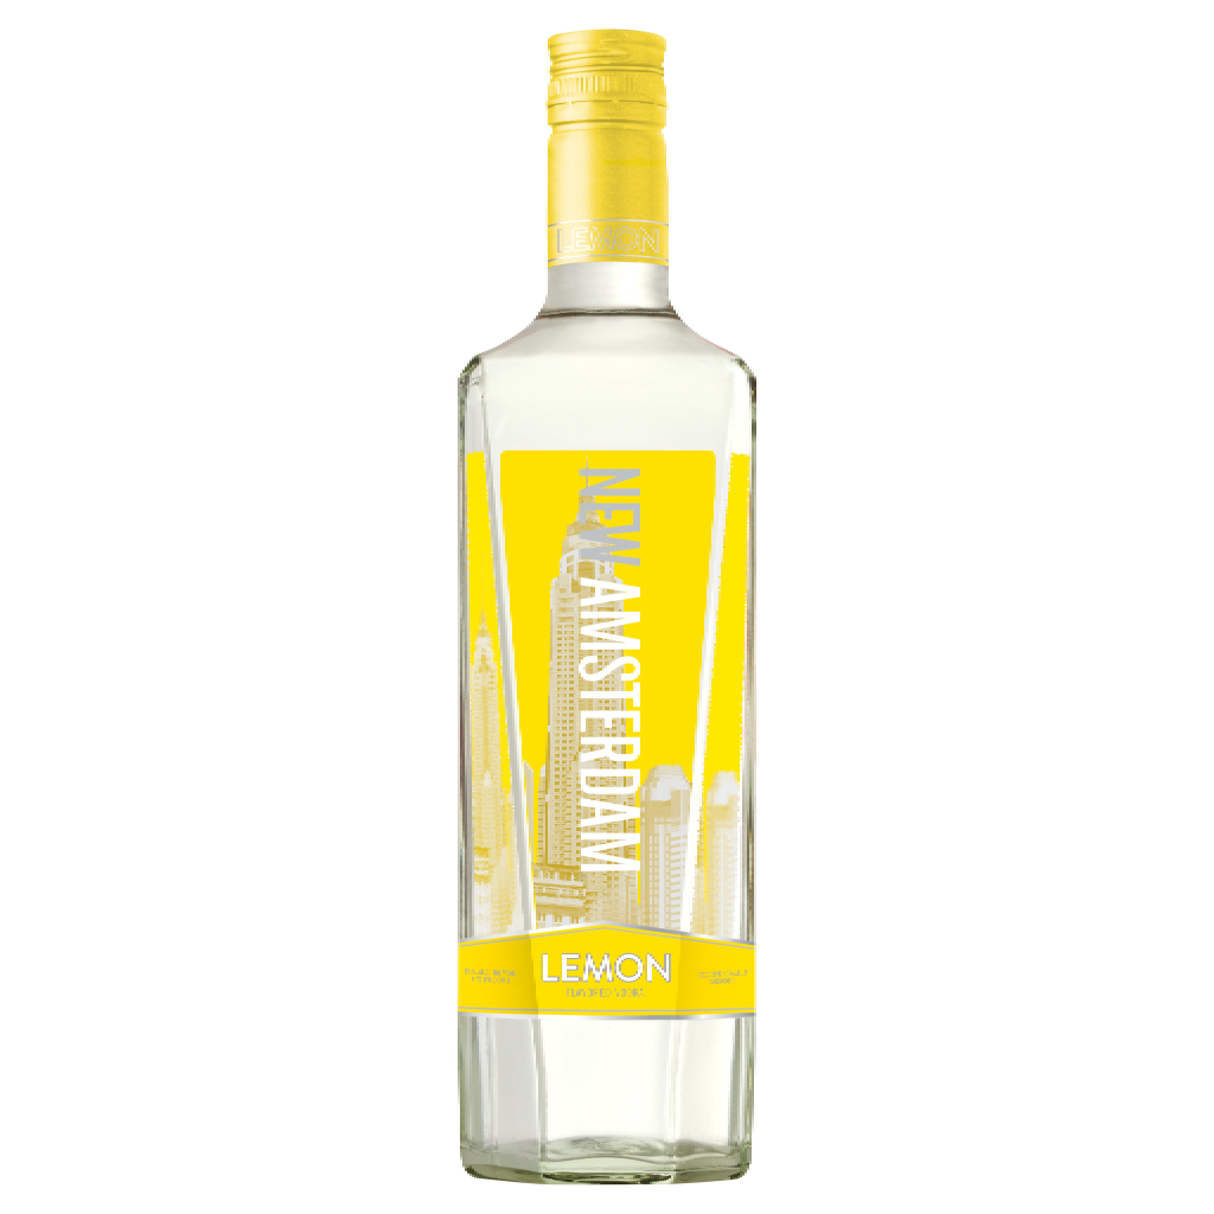 New Amsterdam Lemon Vodka - Liquor Geeks